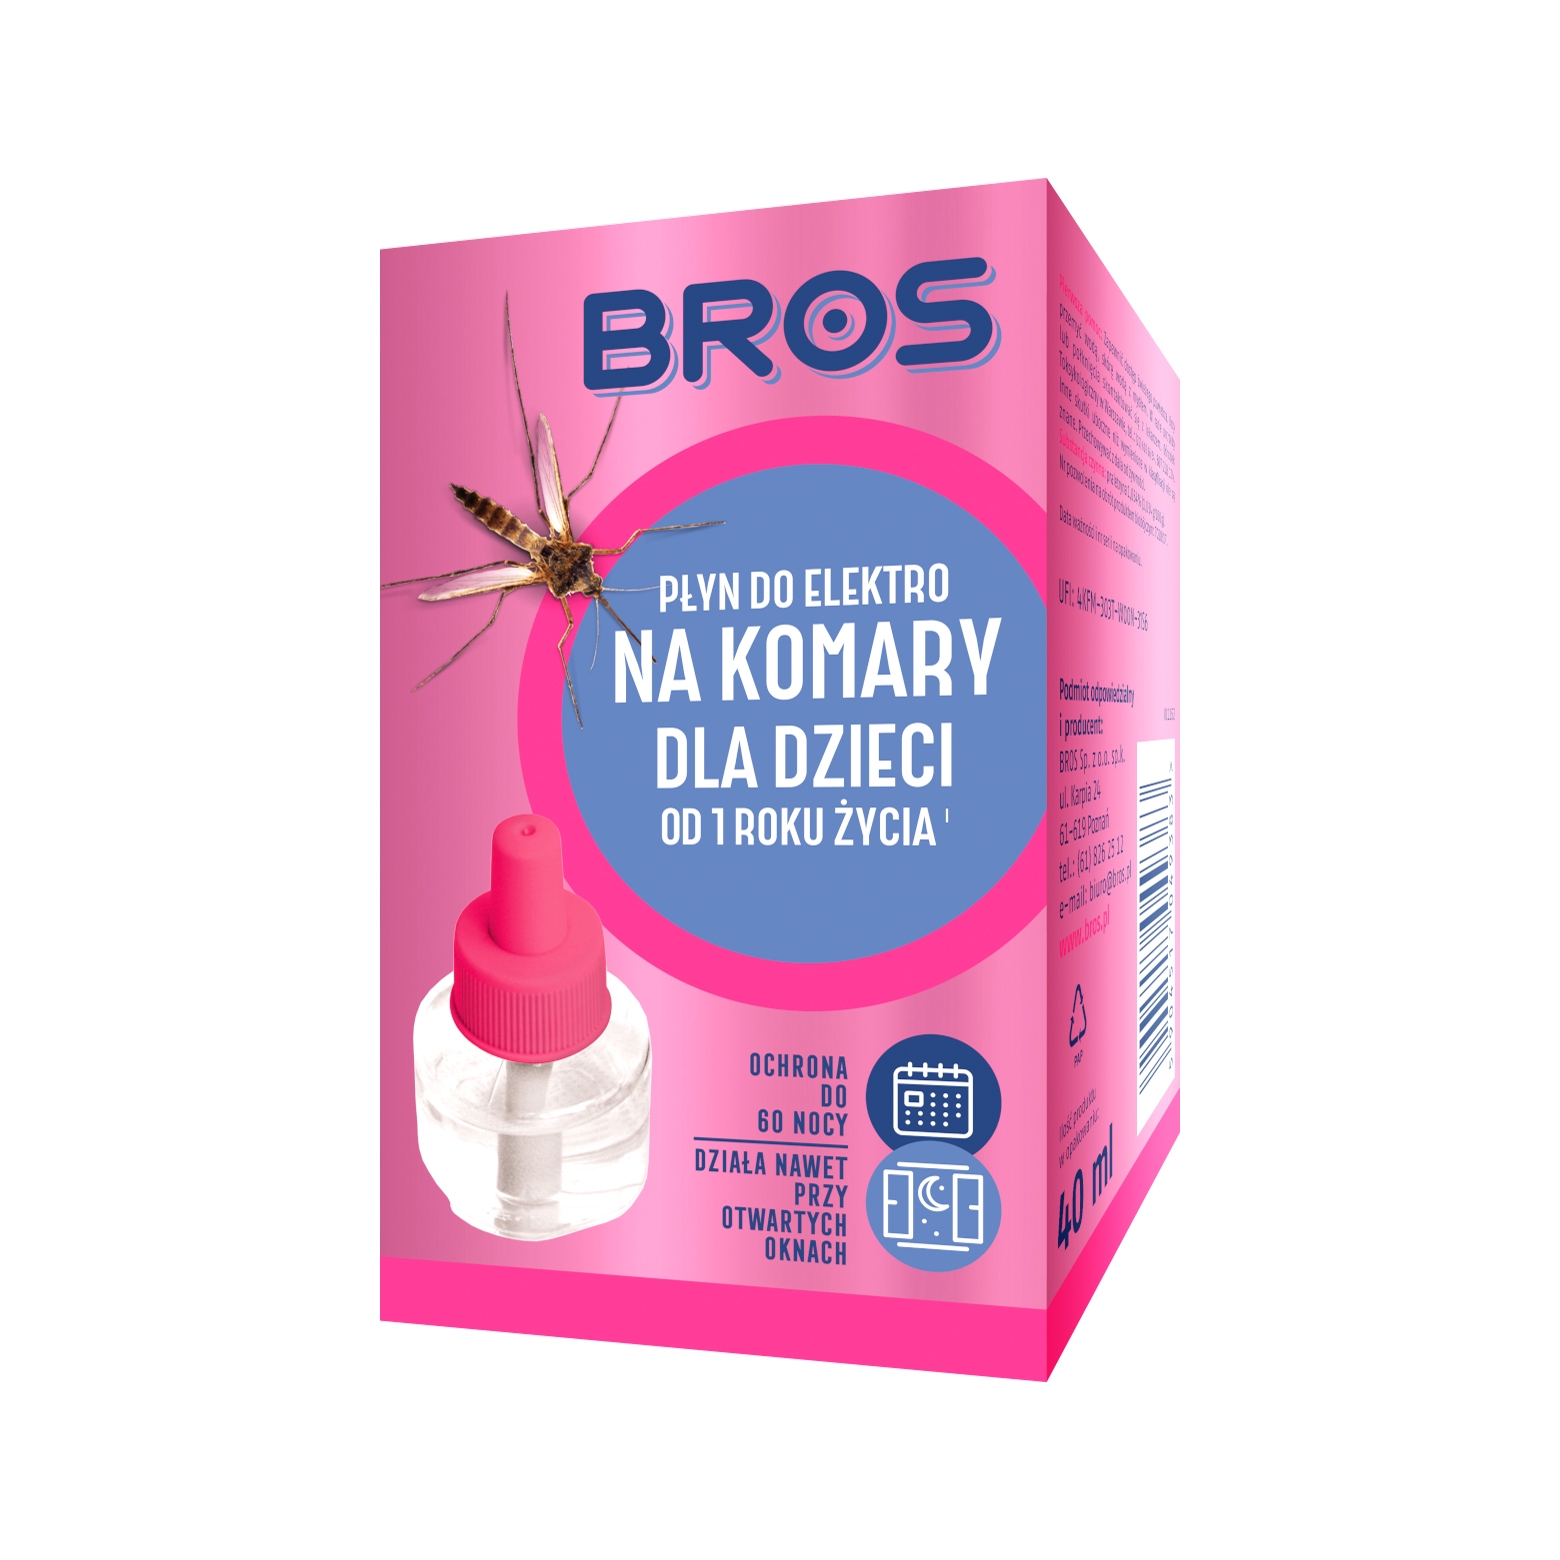 Image of Płyn do elektro Bros na komary dla dzieci (454)